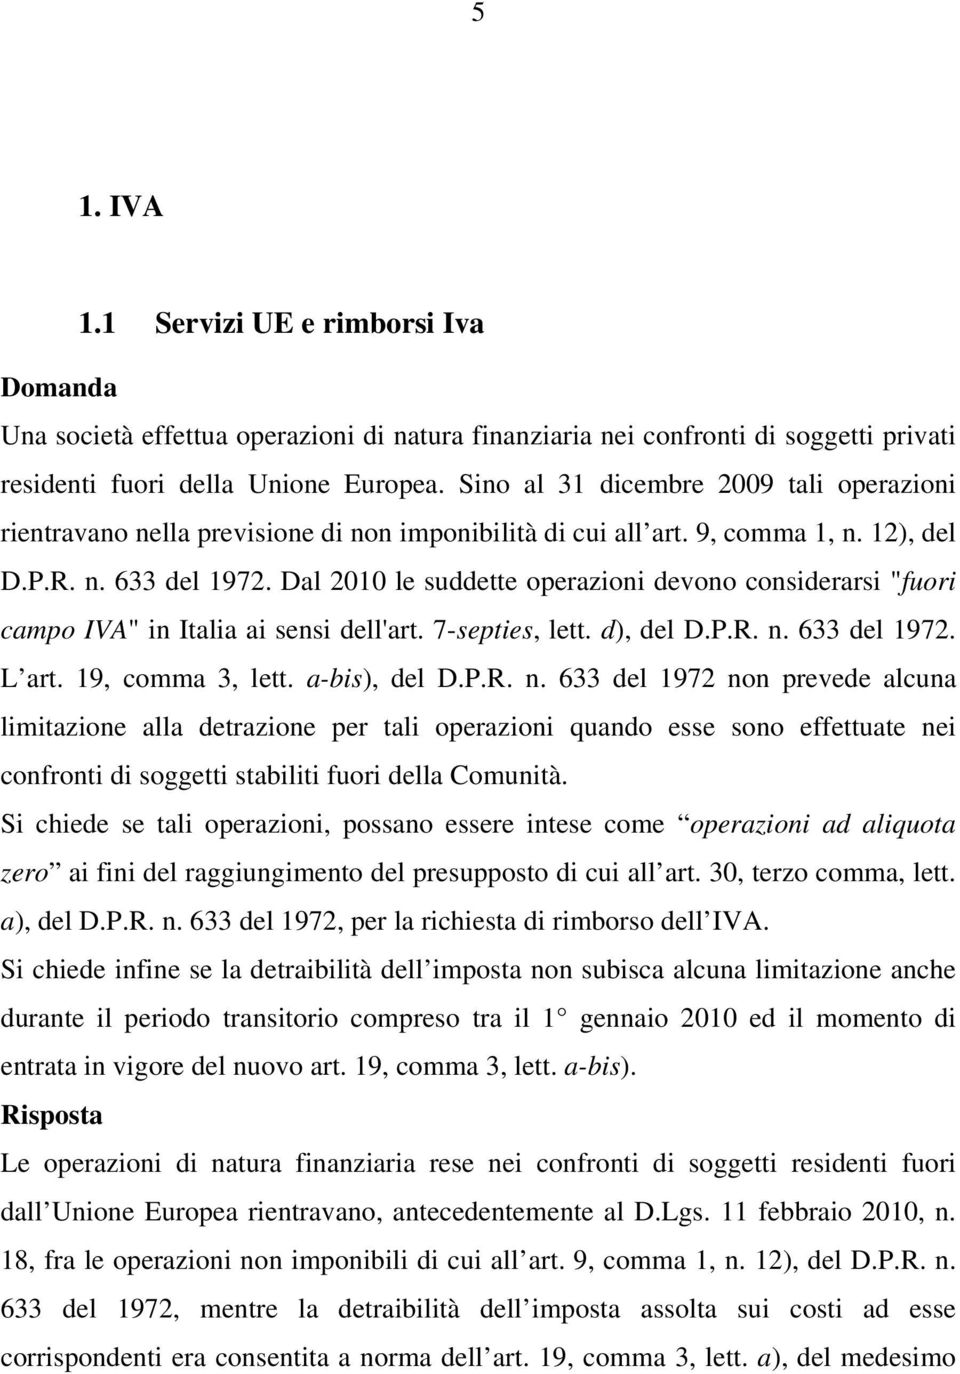 Dal 2010 le suddette operazioni devono considerarsi "fuori campo IVA" in Italia ai sensi dell'art. 7-septies, lett. d), del D.P.R. n.